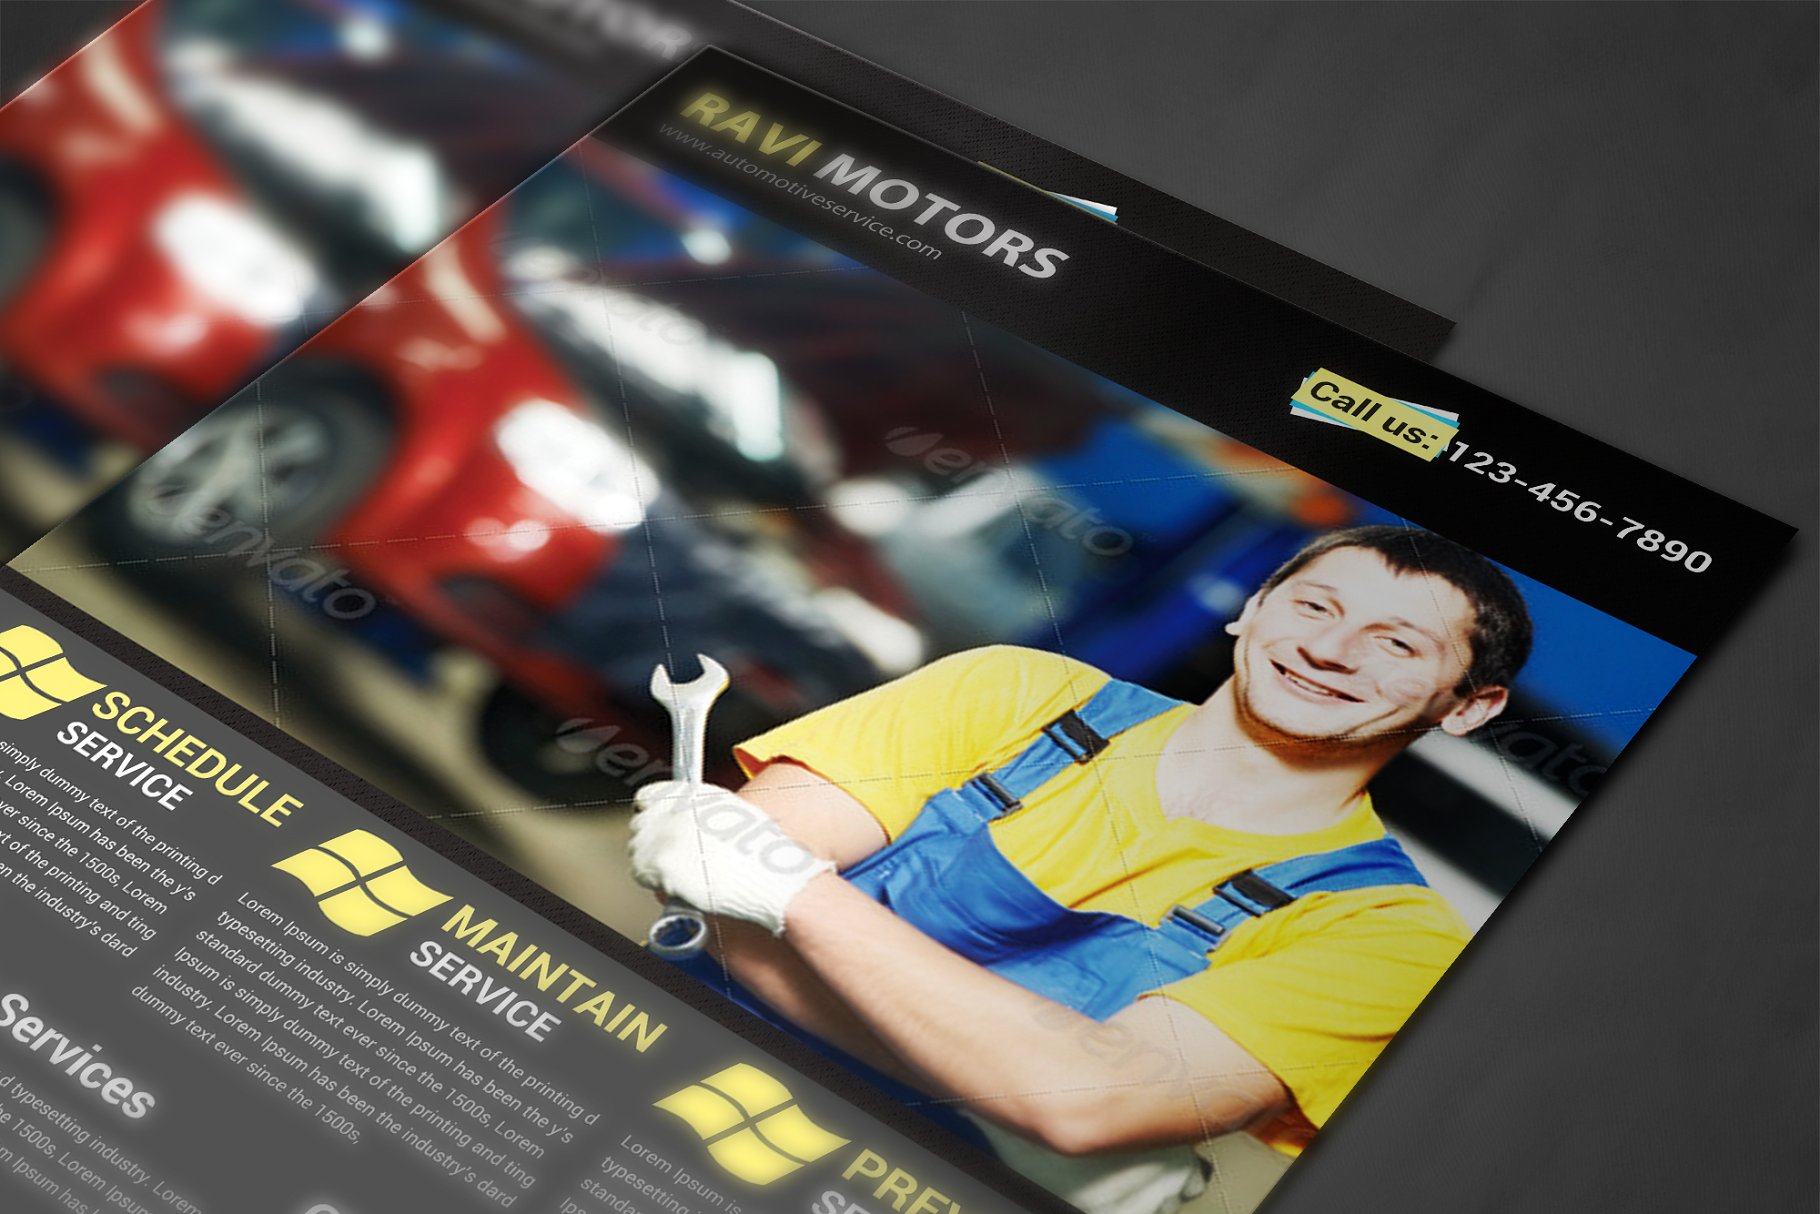 汽车维修4S店宣传传单模板 Auto Repair Flyer Template插图(3)